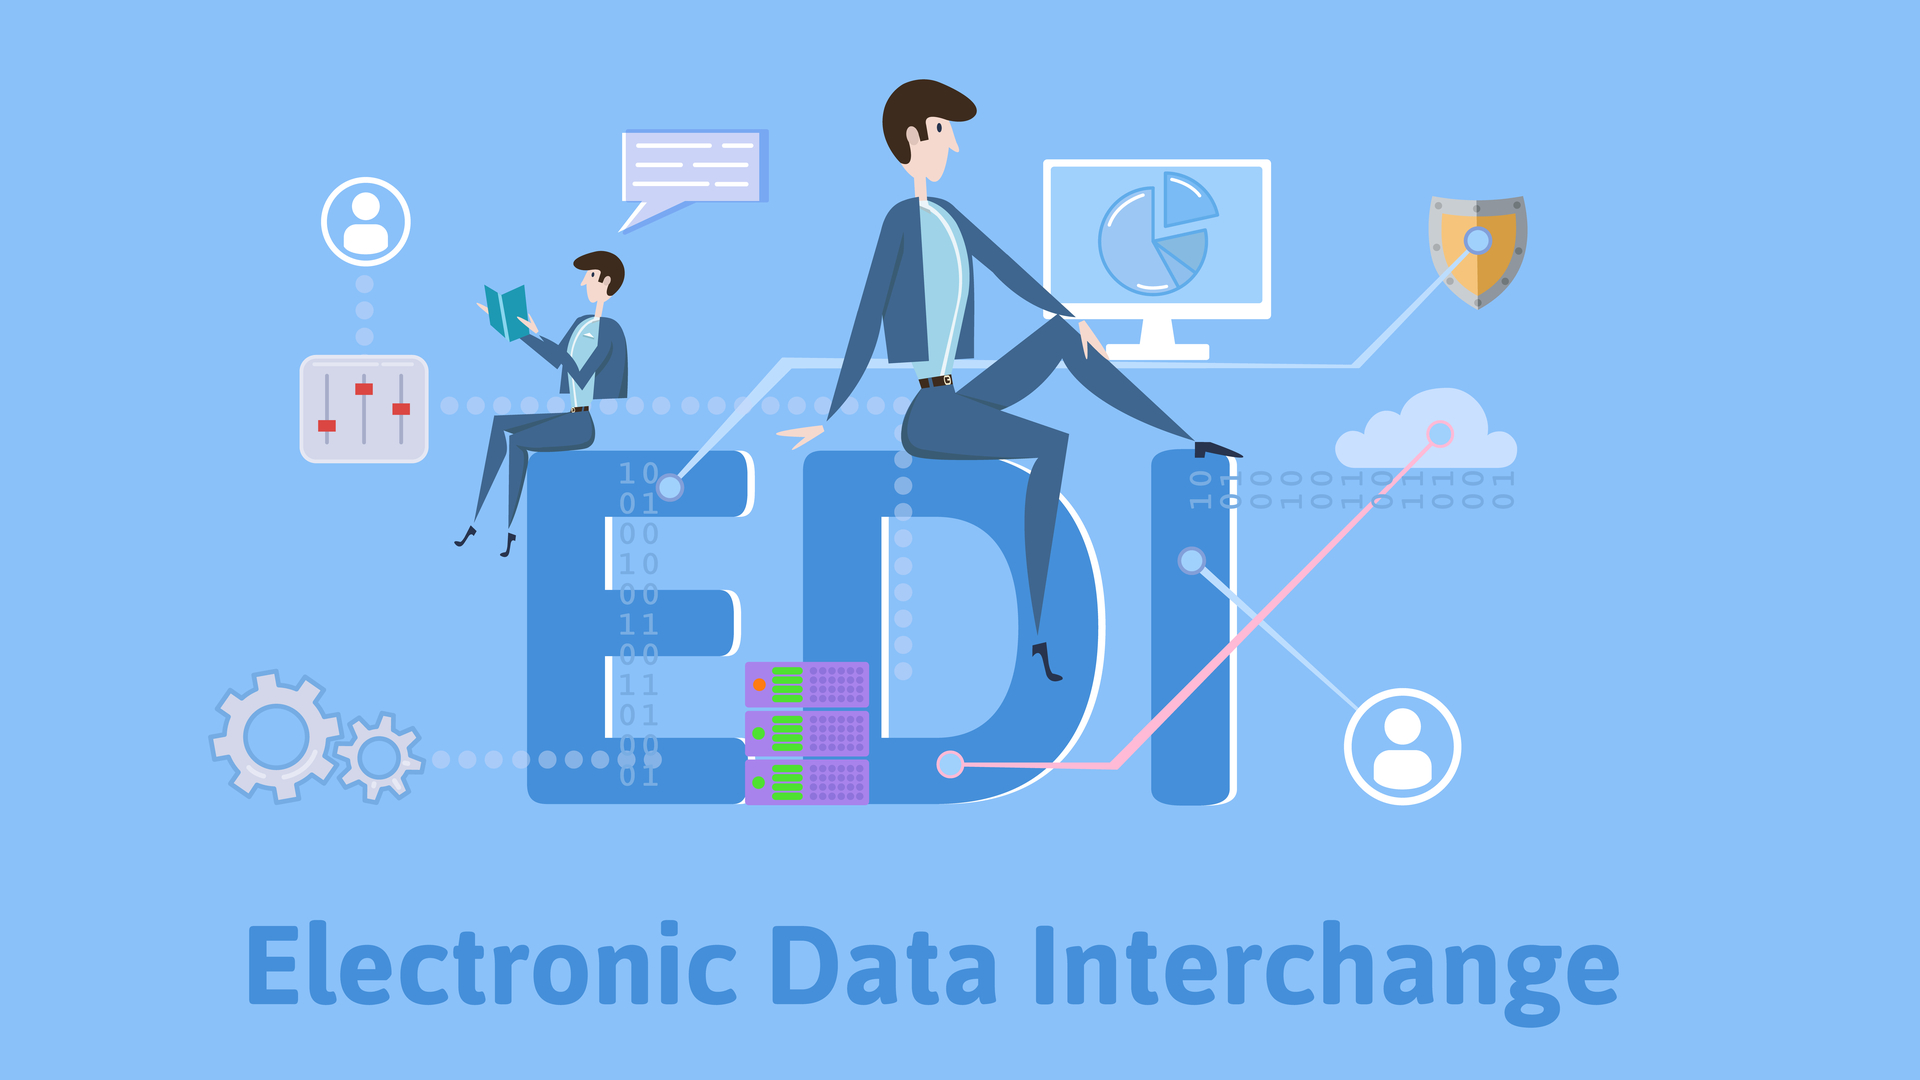 electronic data interchange edi